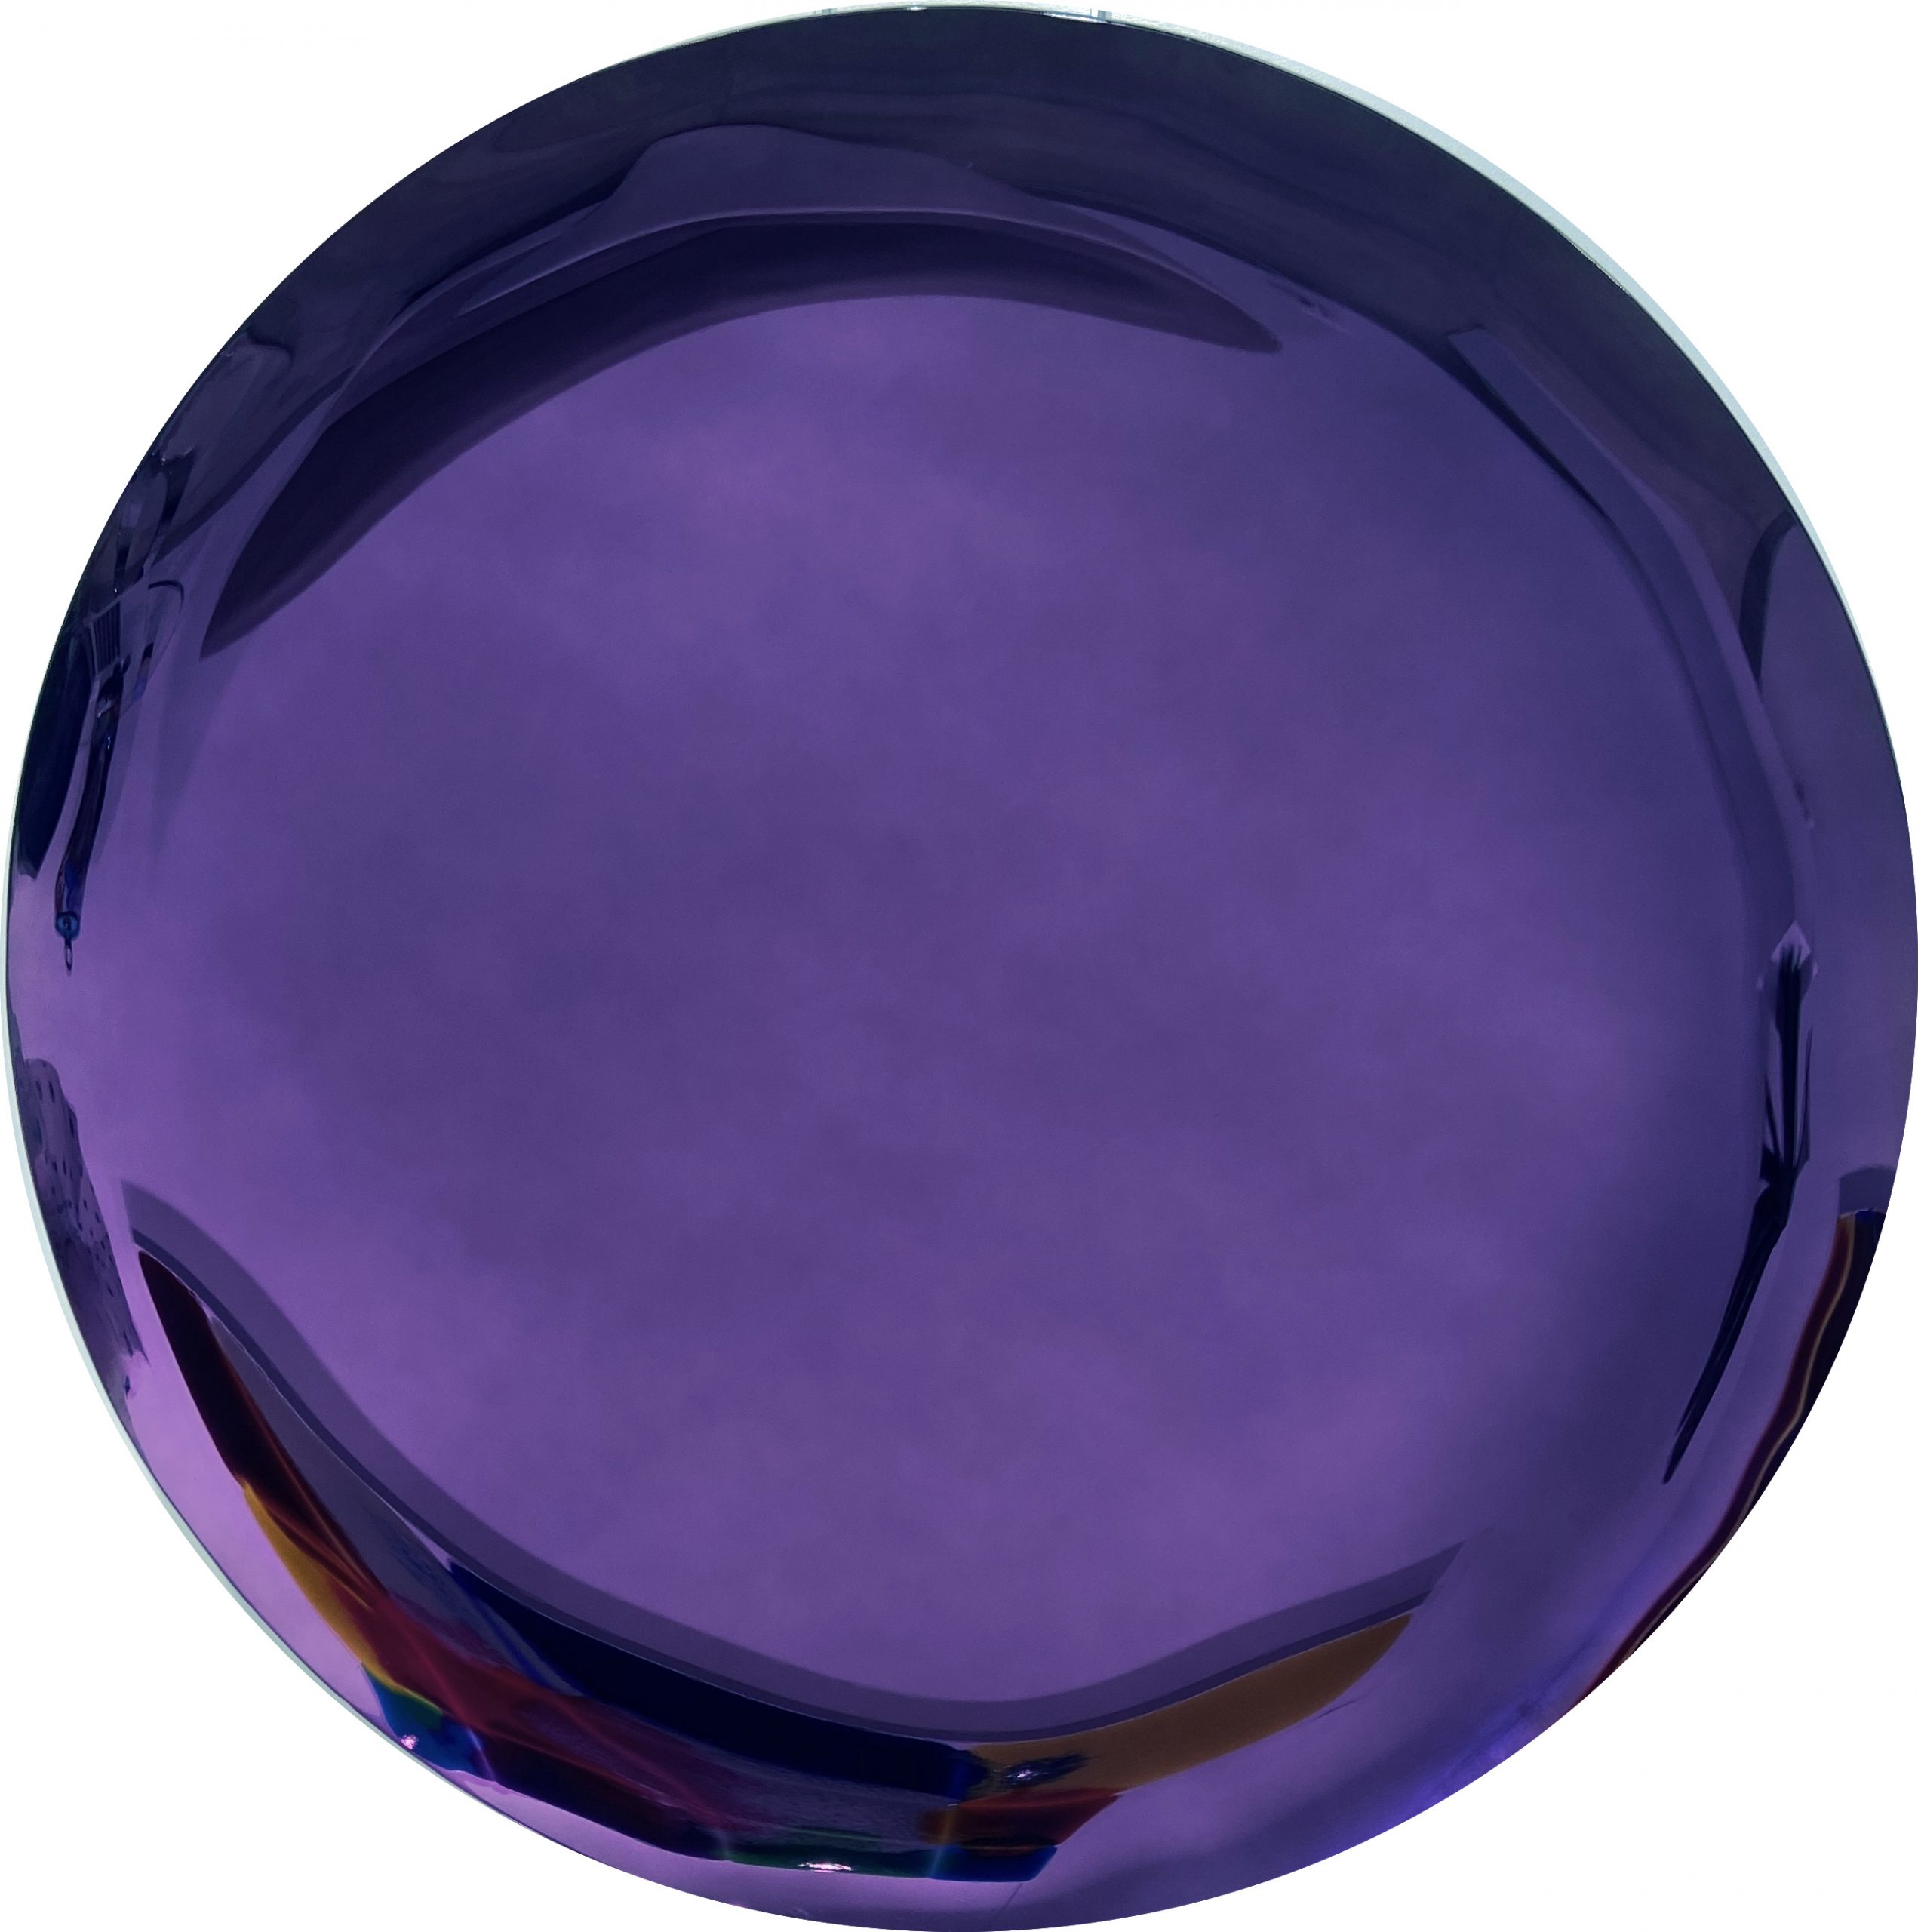 Jeremy Laval - 2022, Deep Round purple, miroir teinté et moulé - diamètre 120 cm, Unique © Marciano Contemporary